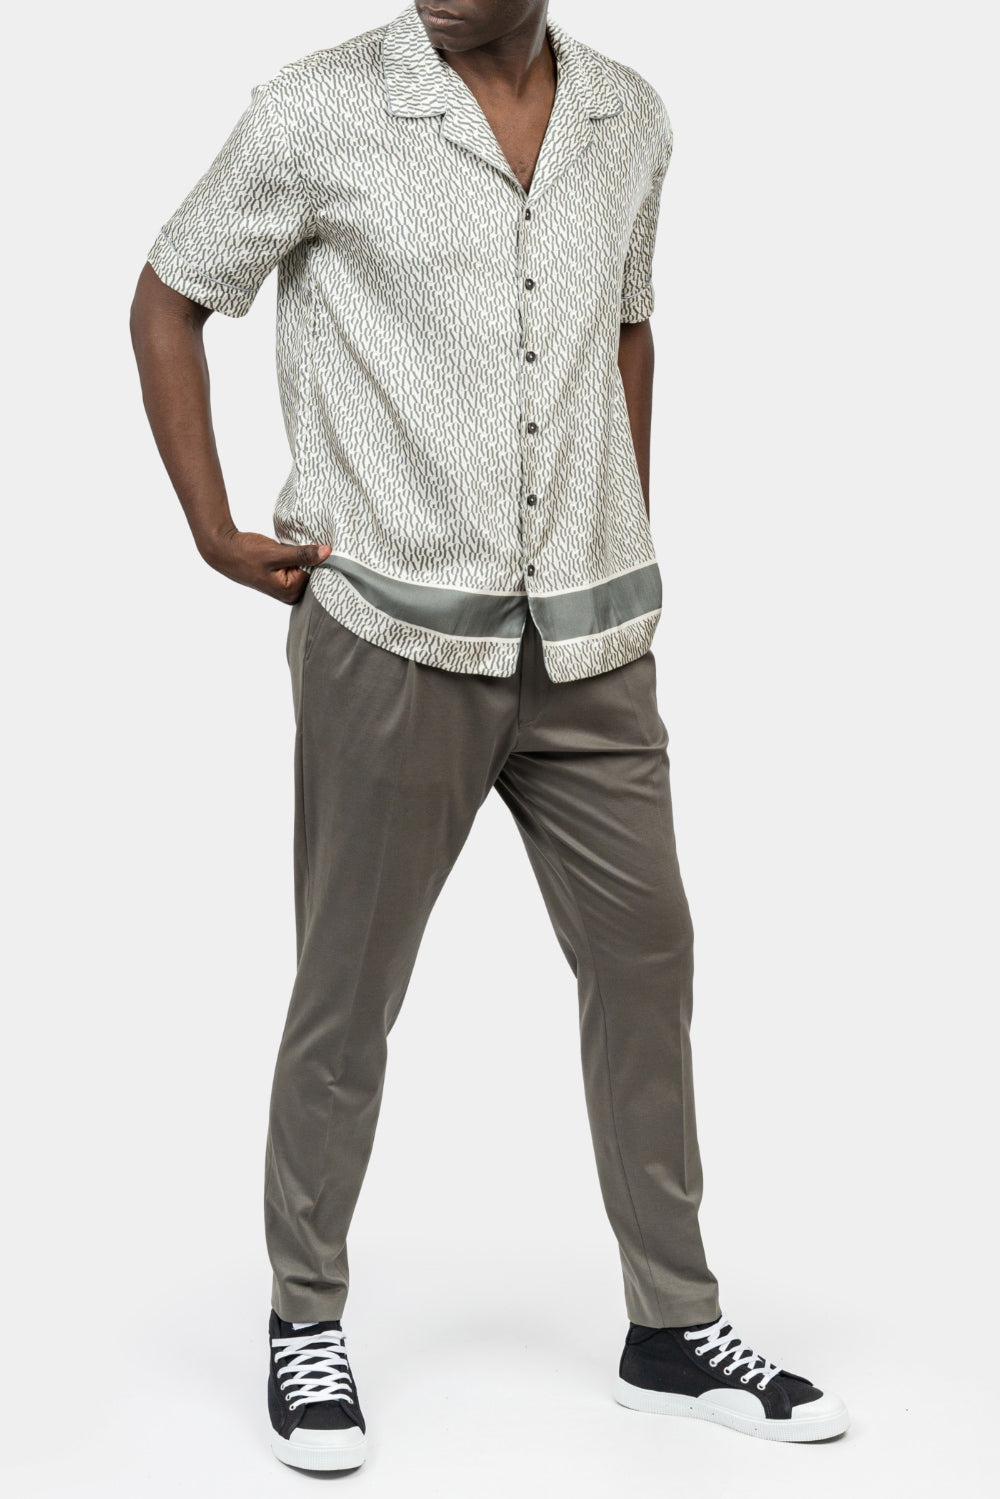 INIMIGO Monogram Silk Button Shirt – Inimigo Clothing